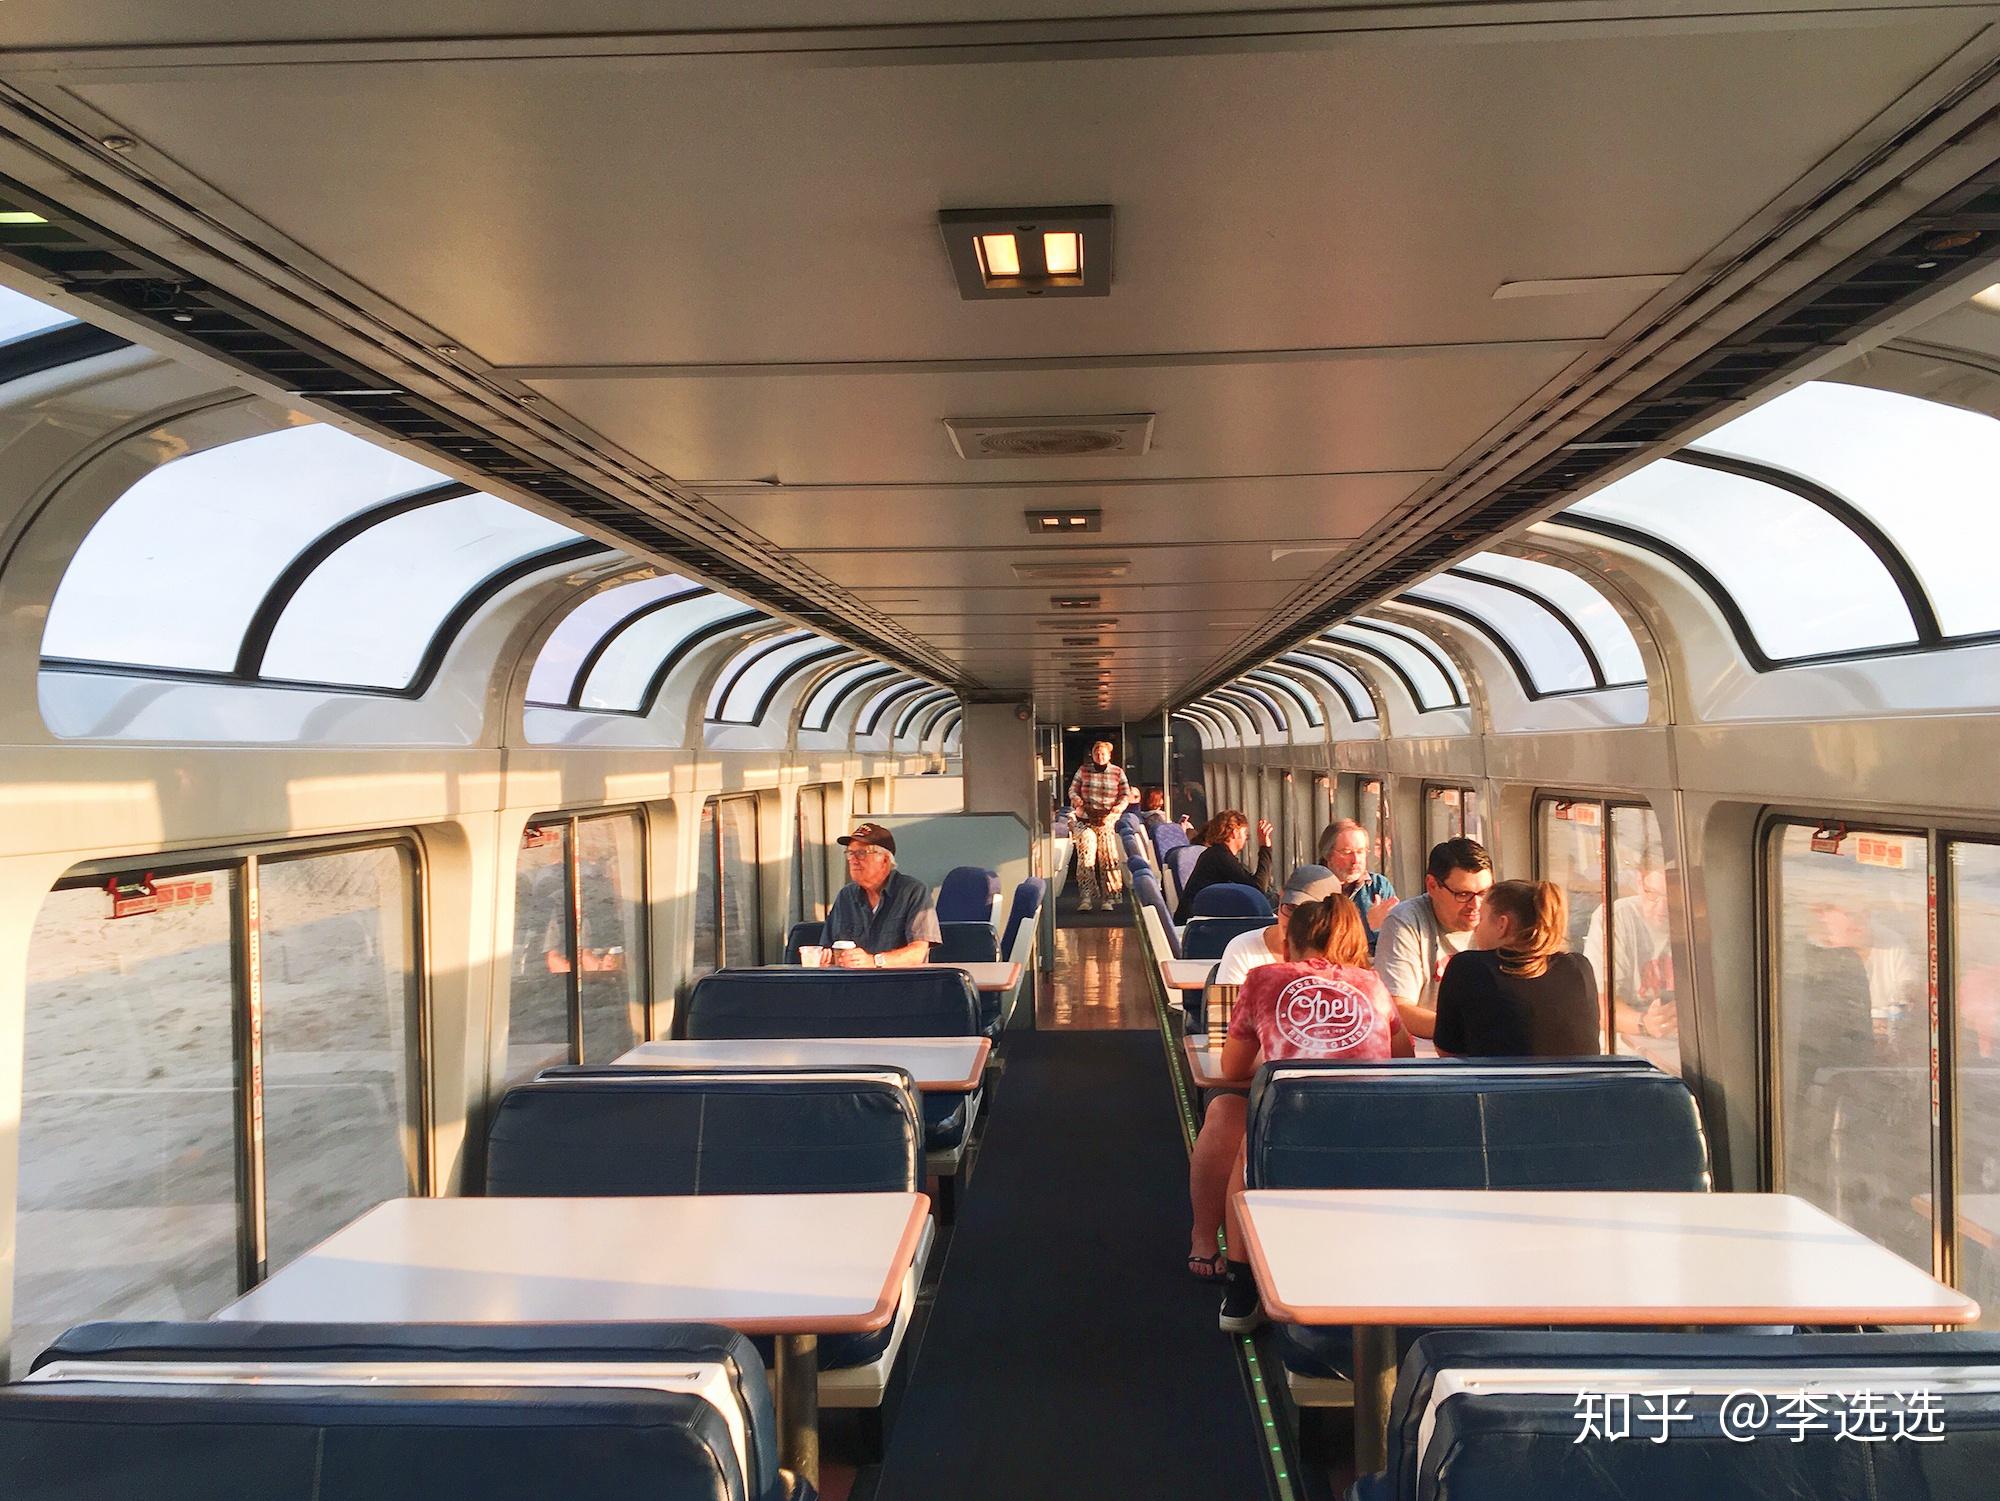 38张摄影作品带你亲身体验浪漫的美国火车之旅